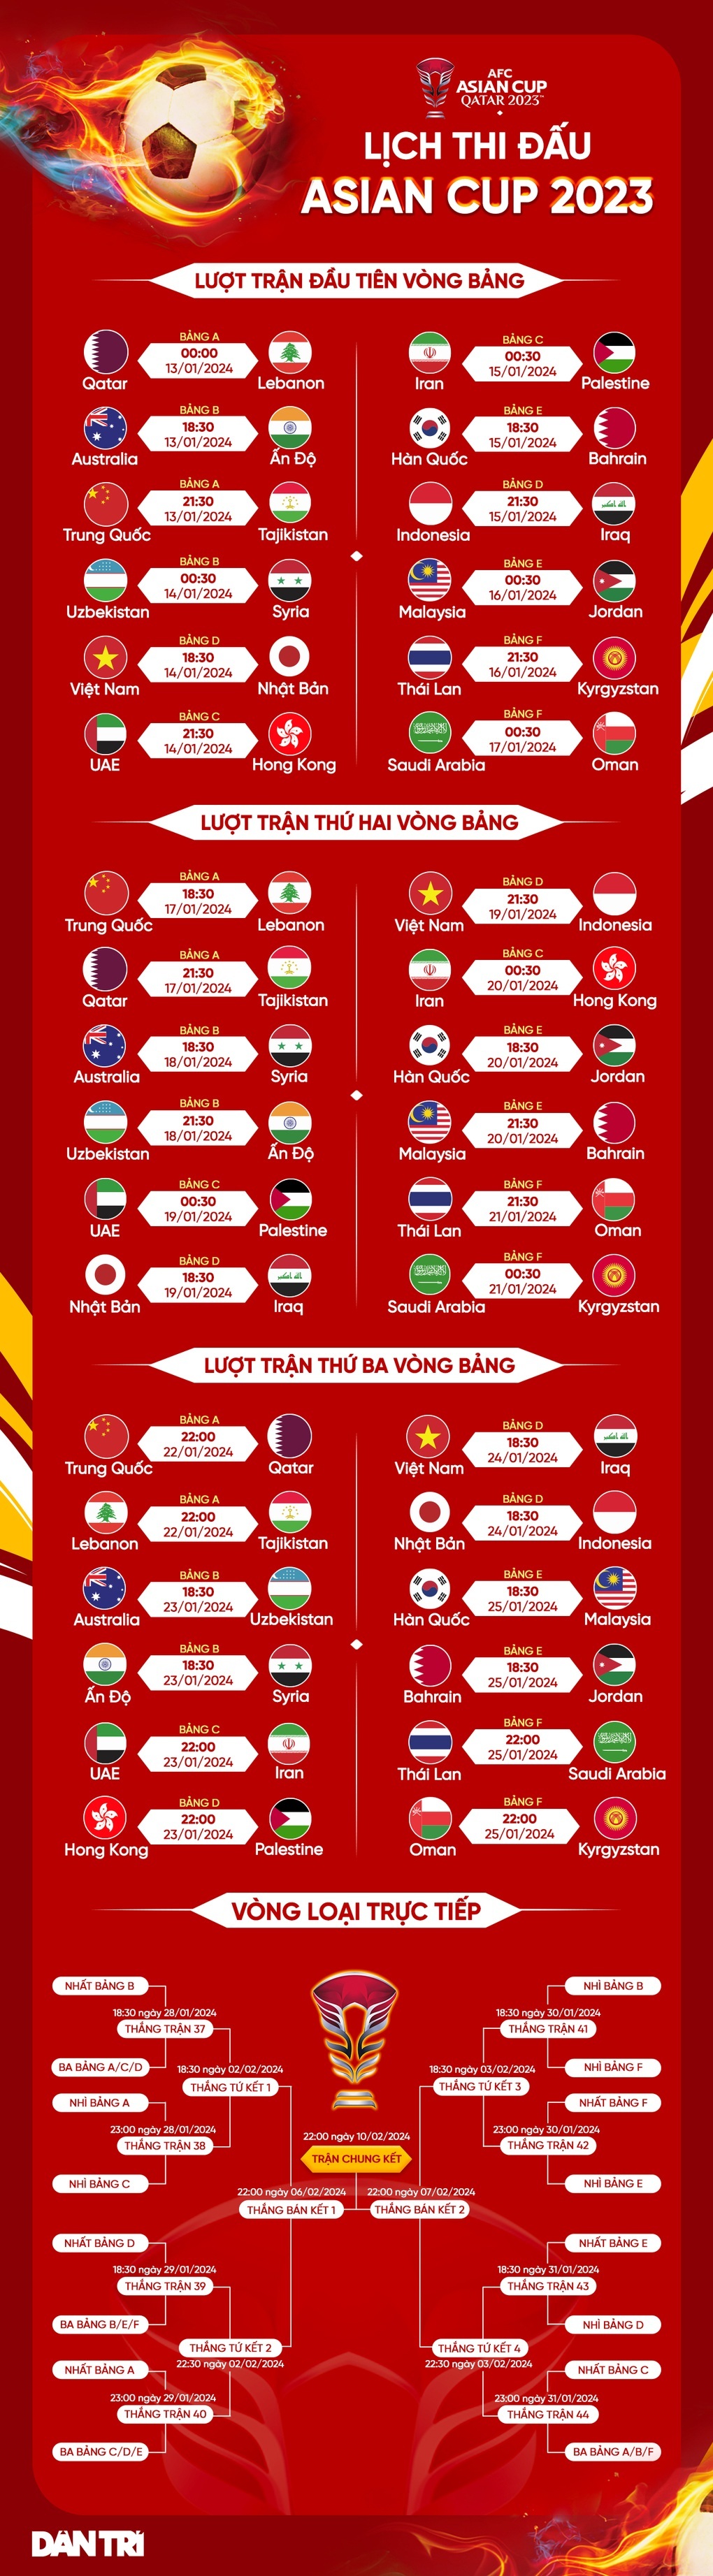 Asian Cup 2023 bất ngờ đổi quy chế, ĐT Việt Nam hưởng lợi - Ảnh 2.